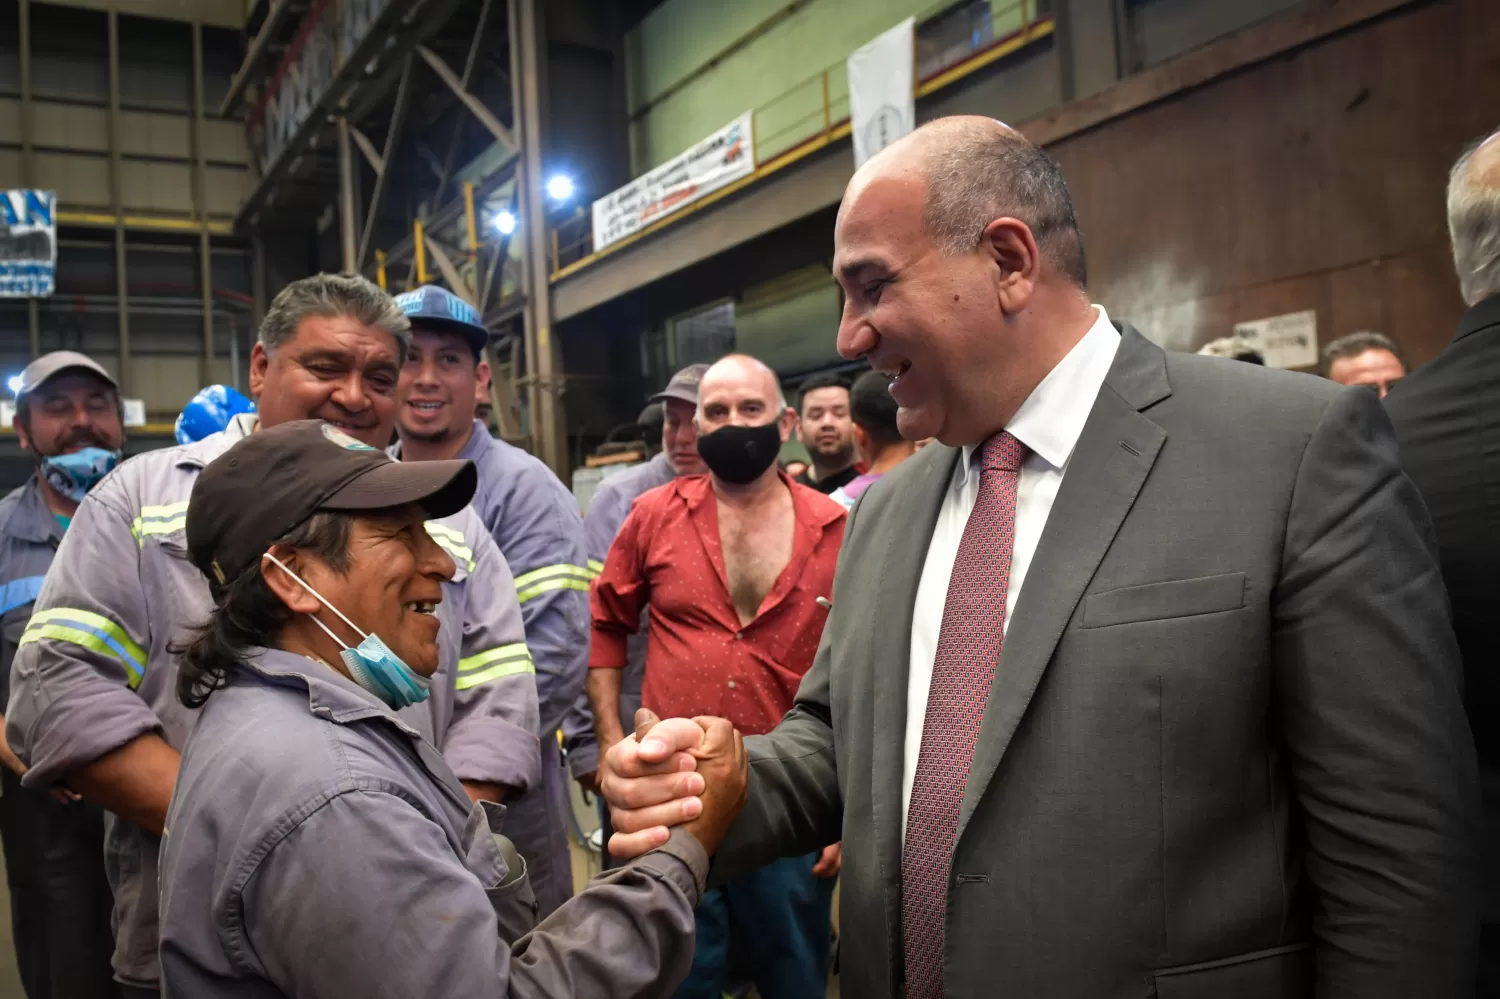 EN RECORRIDO OFICIAL. El jefe de Gabinete Juan Manzur saluda a un operario de una planta. Foto: @JuanManzurOK